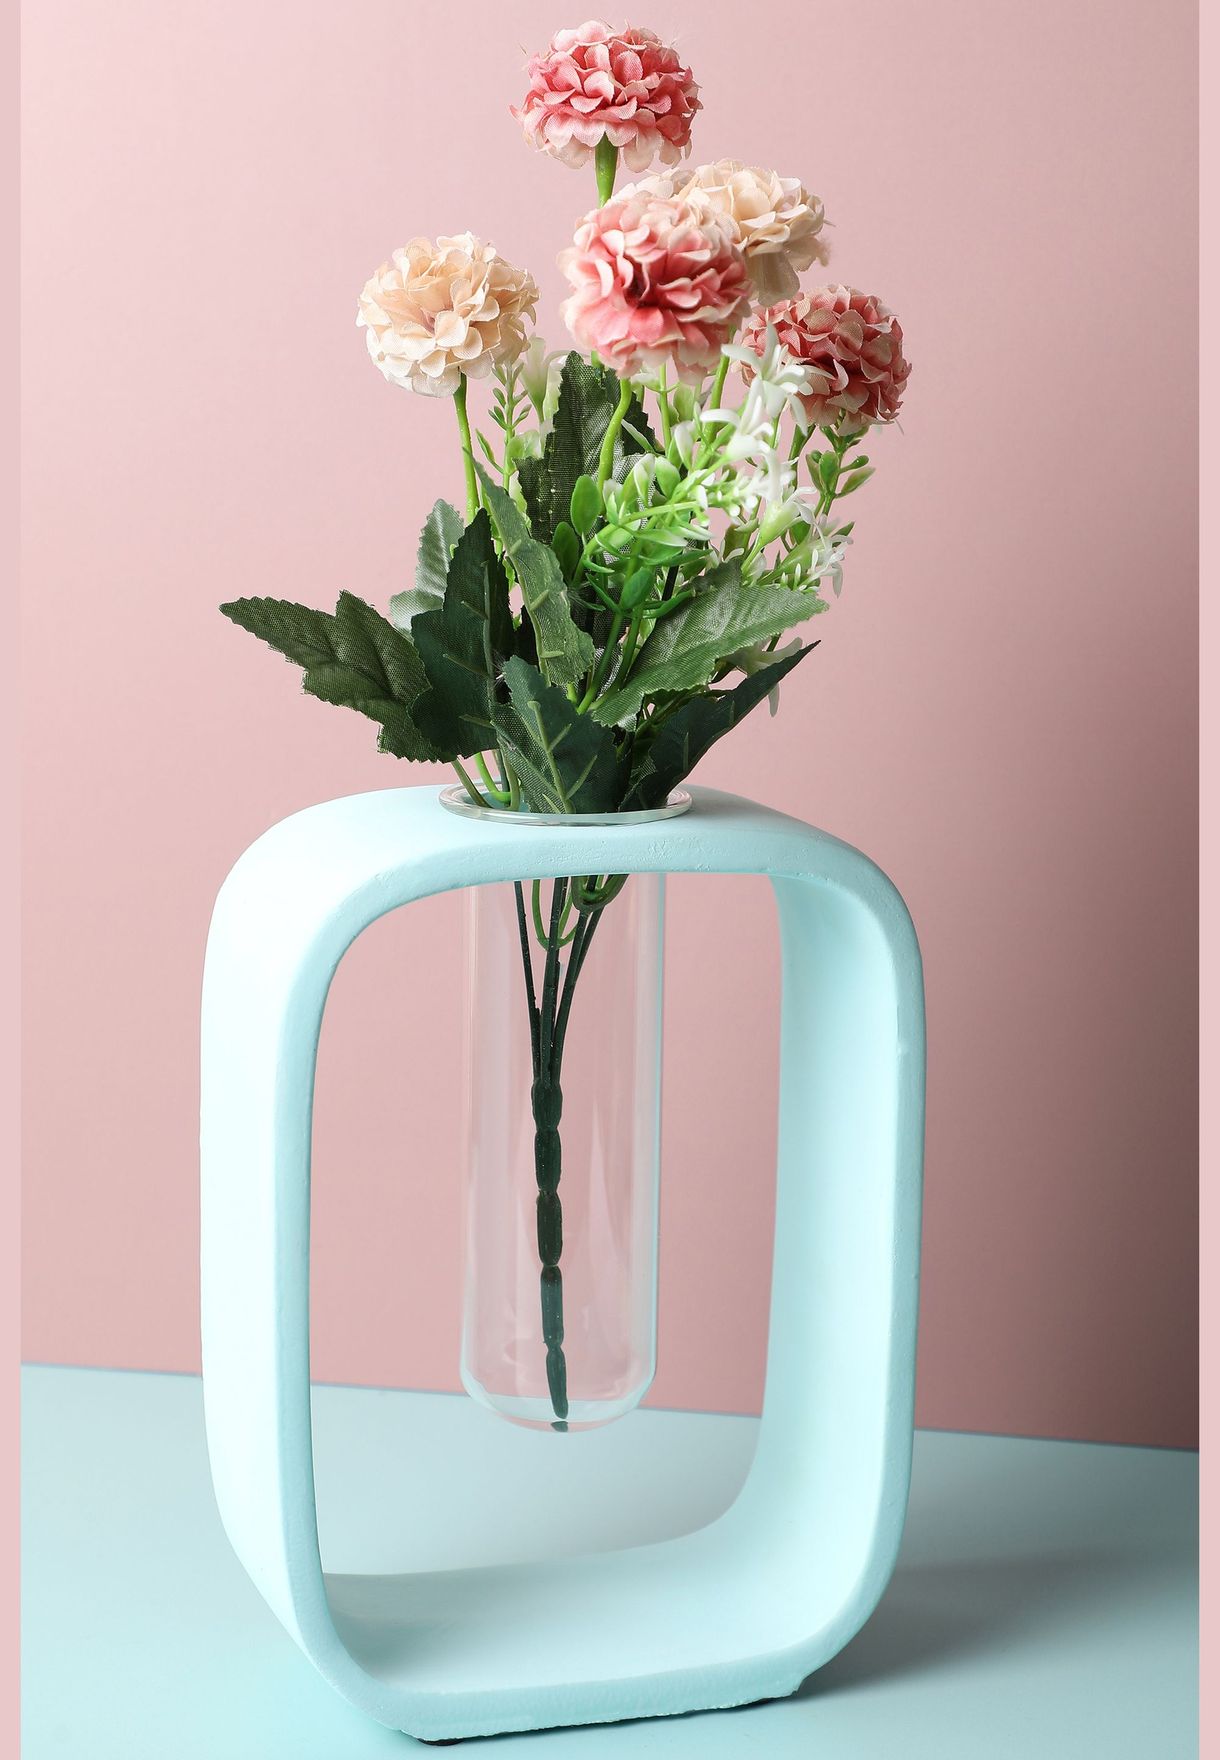 Sqaure Shaped Modern Glass Test Tube Ceramic Flower Vase For Home Decor 